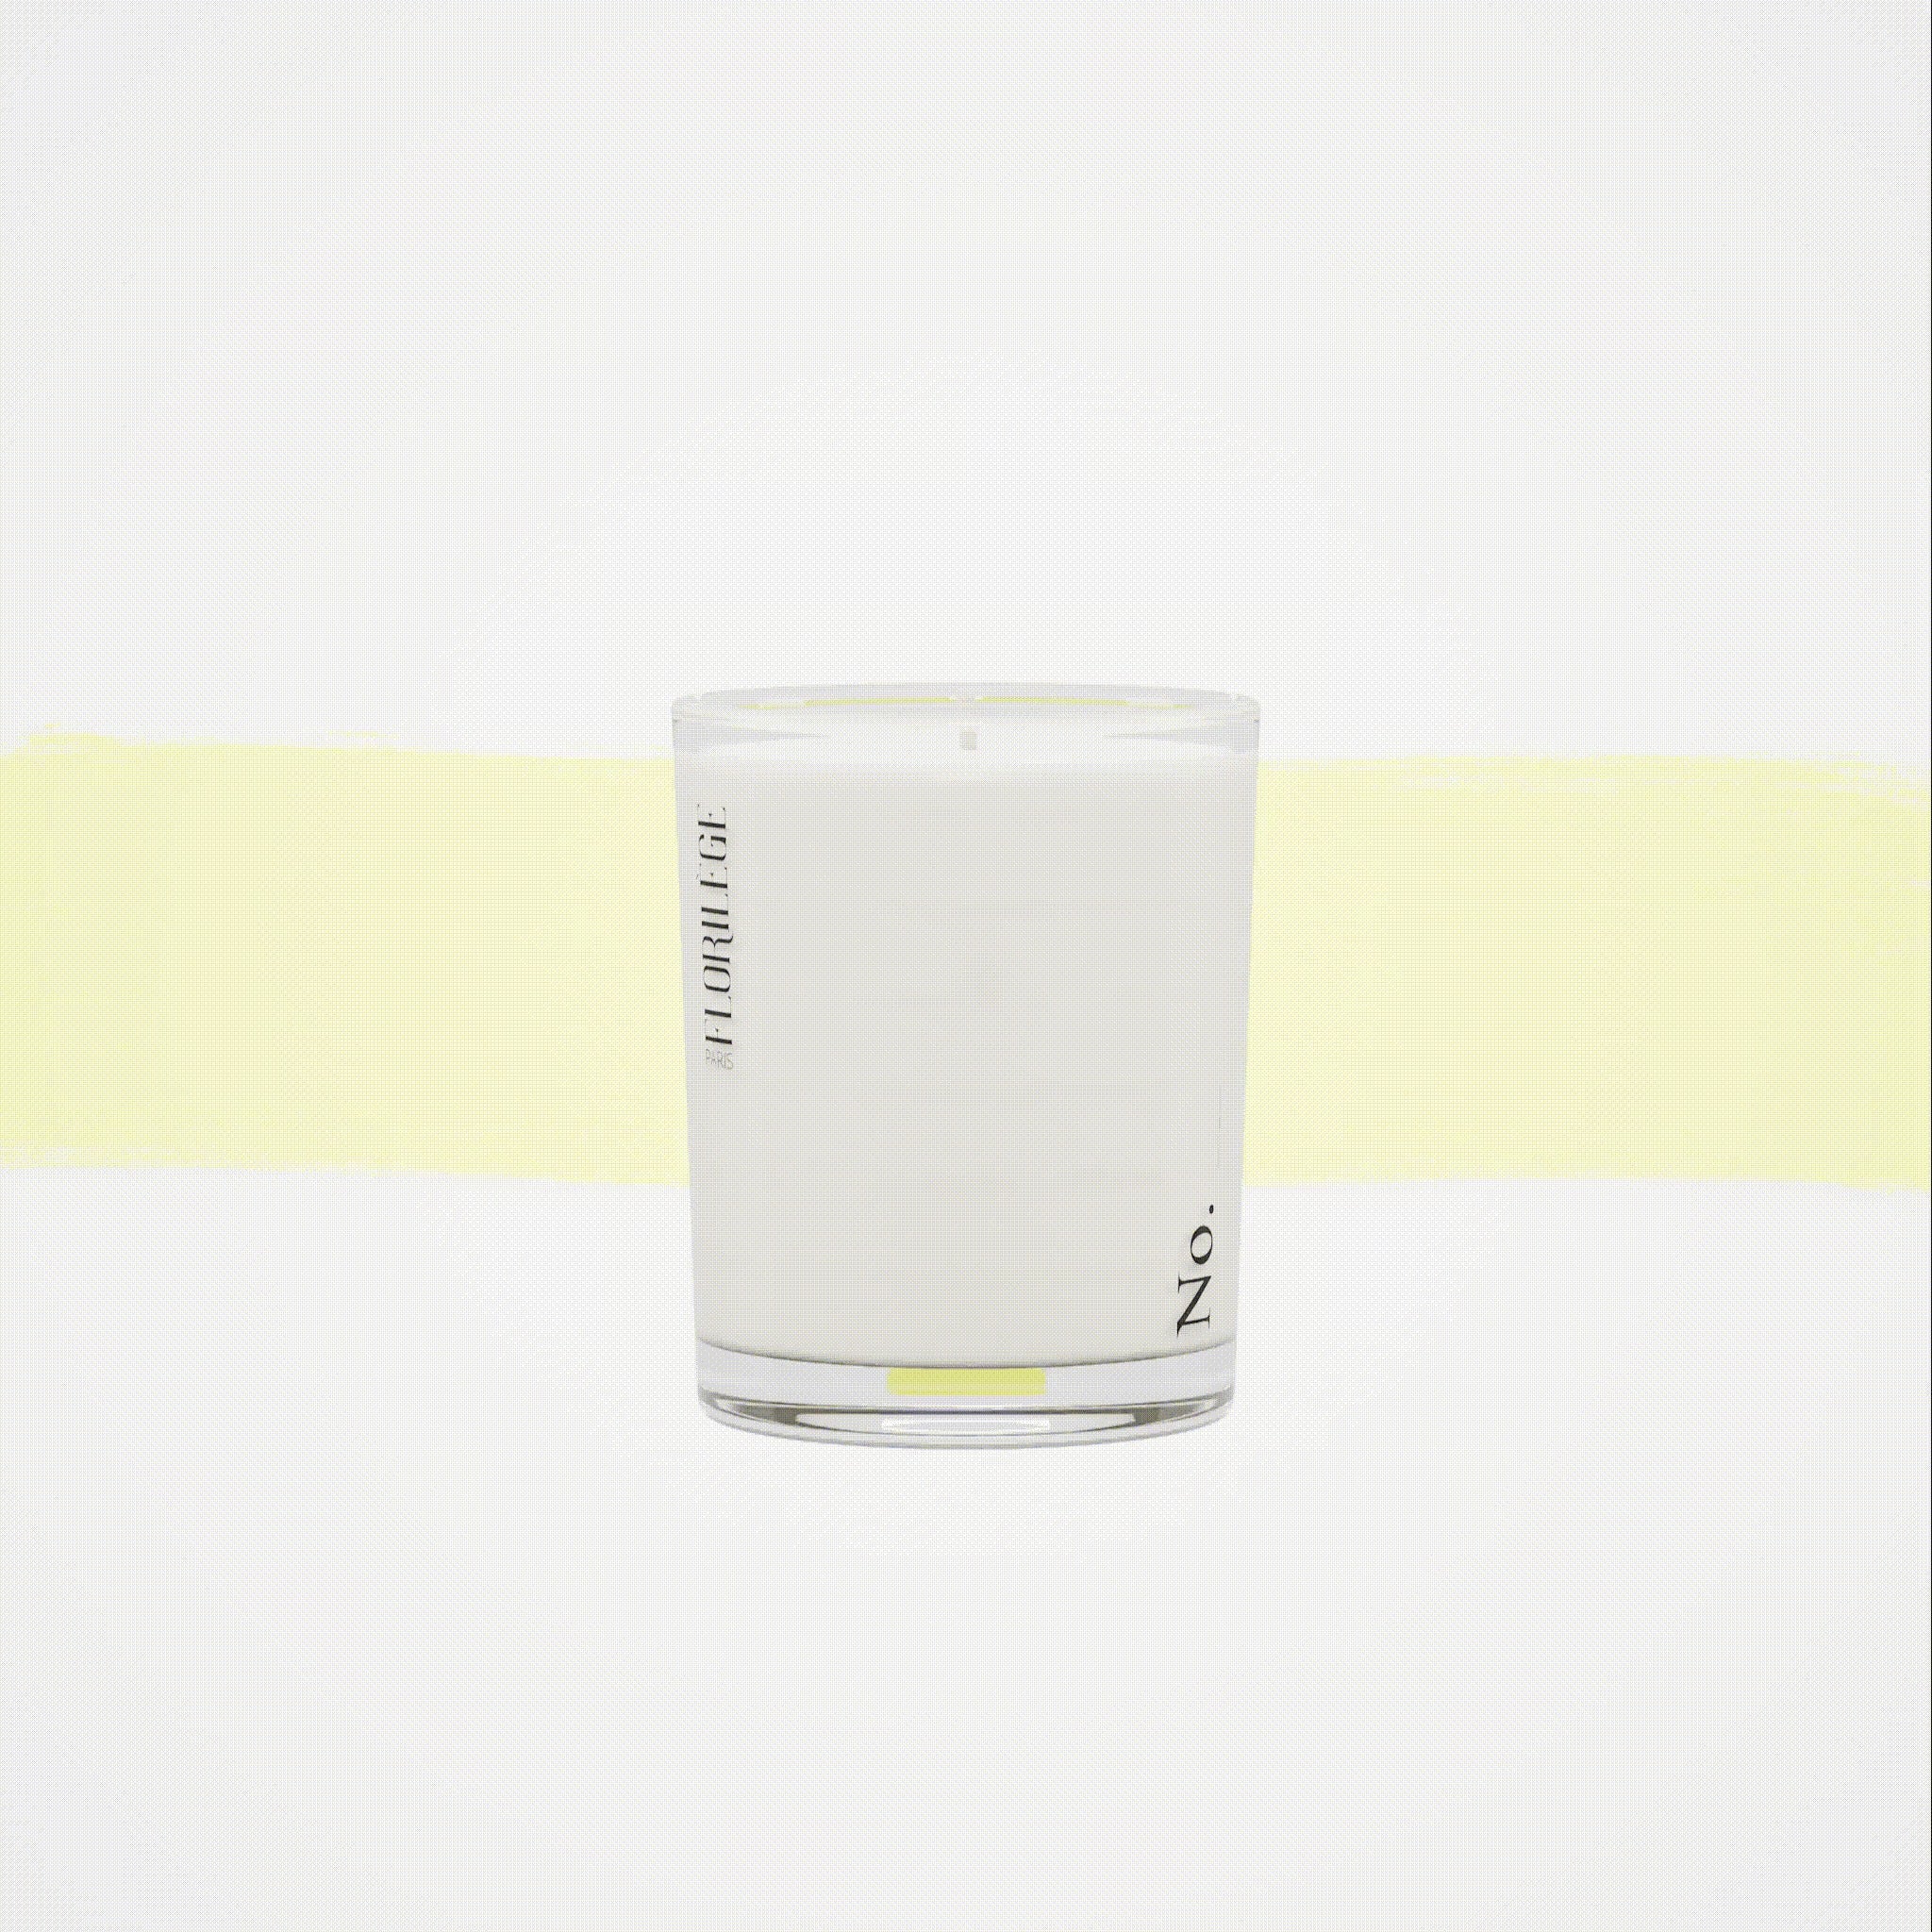 No. 03 - Thé Huyen blanc - Candle